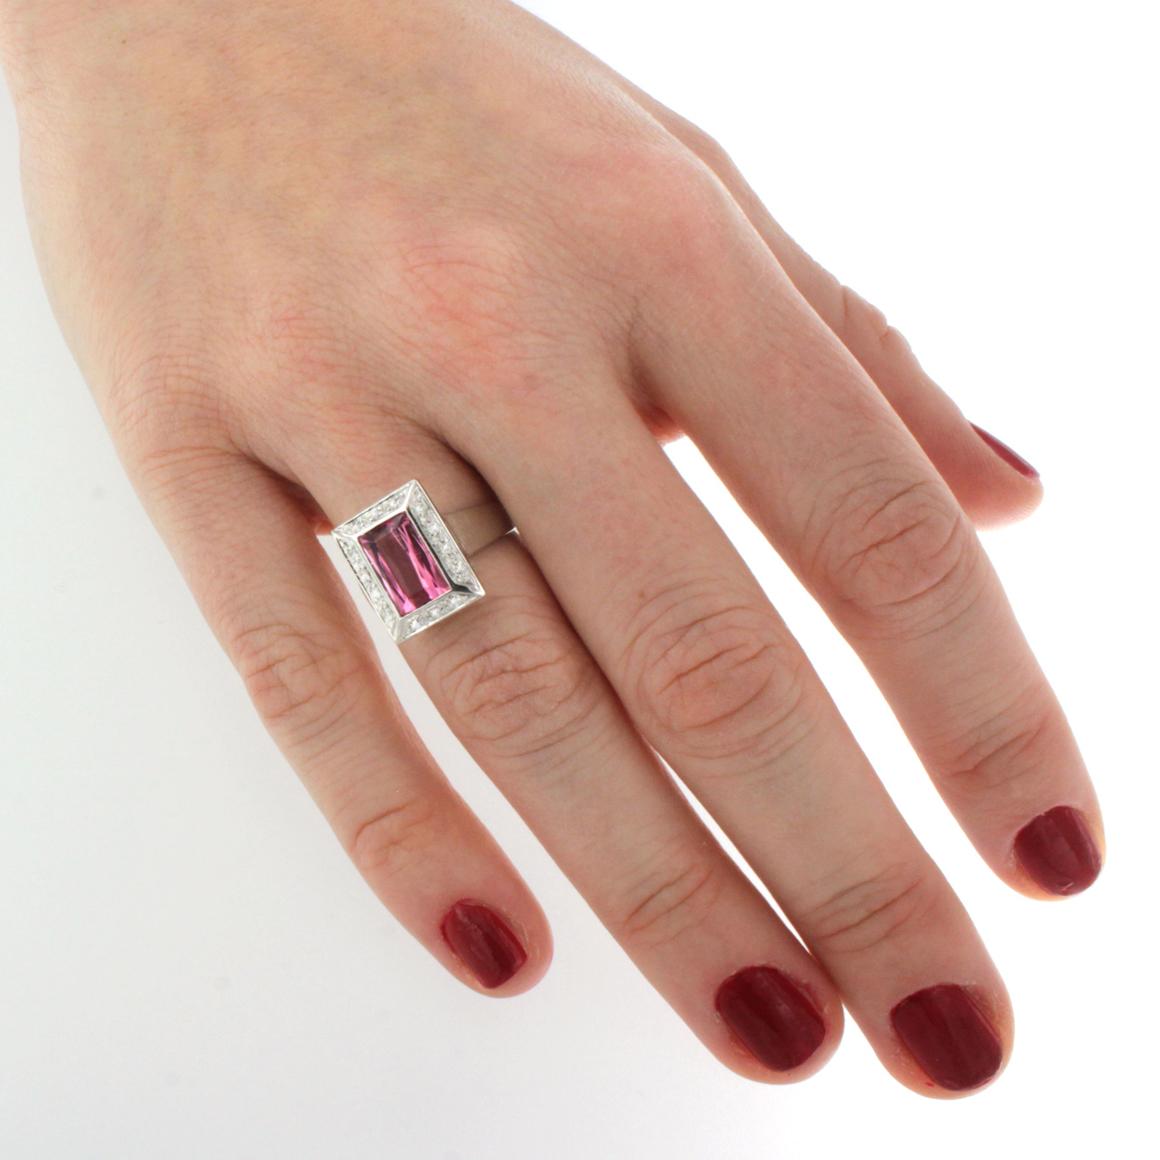 Super Farbe von rosa Turmalin und weißen Diamanten für diese klassische und trandy Ring in Weißgold 18kt  und weiße Diamanten cts 0,15 VS Farbe G/H.   Turmalin Größe mm 6x10    g.5,70

Größe des Rings: EU MIS 13   /  USA 7   


Alle